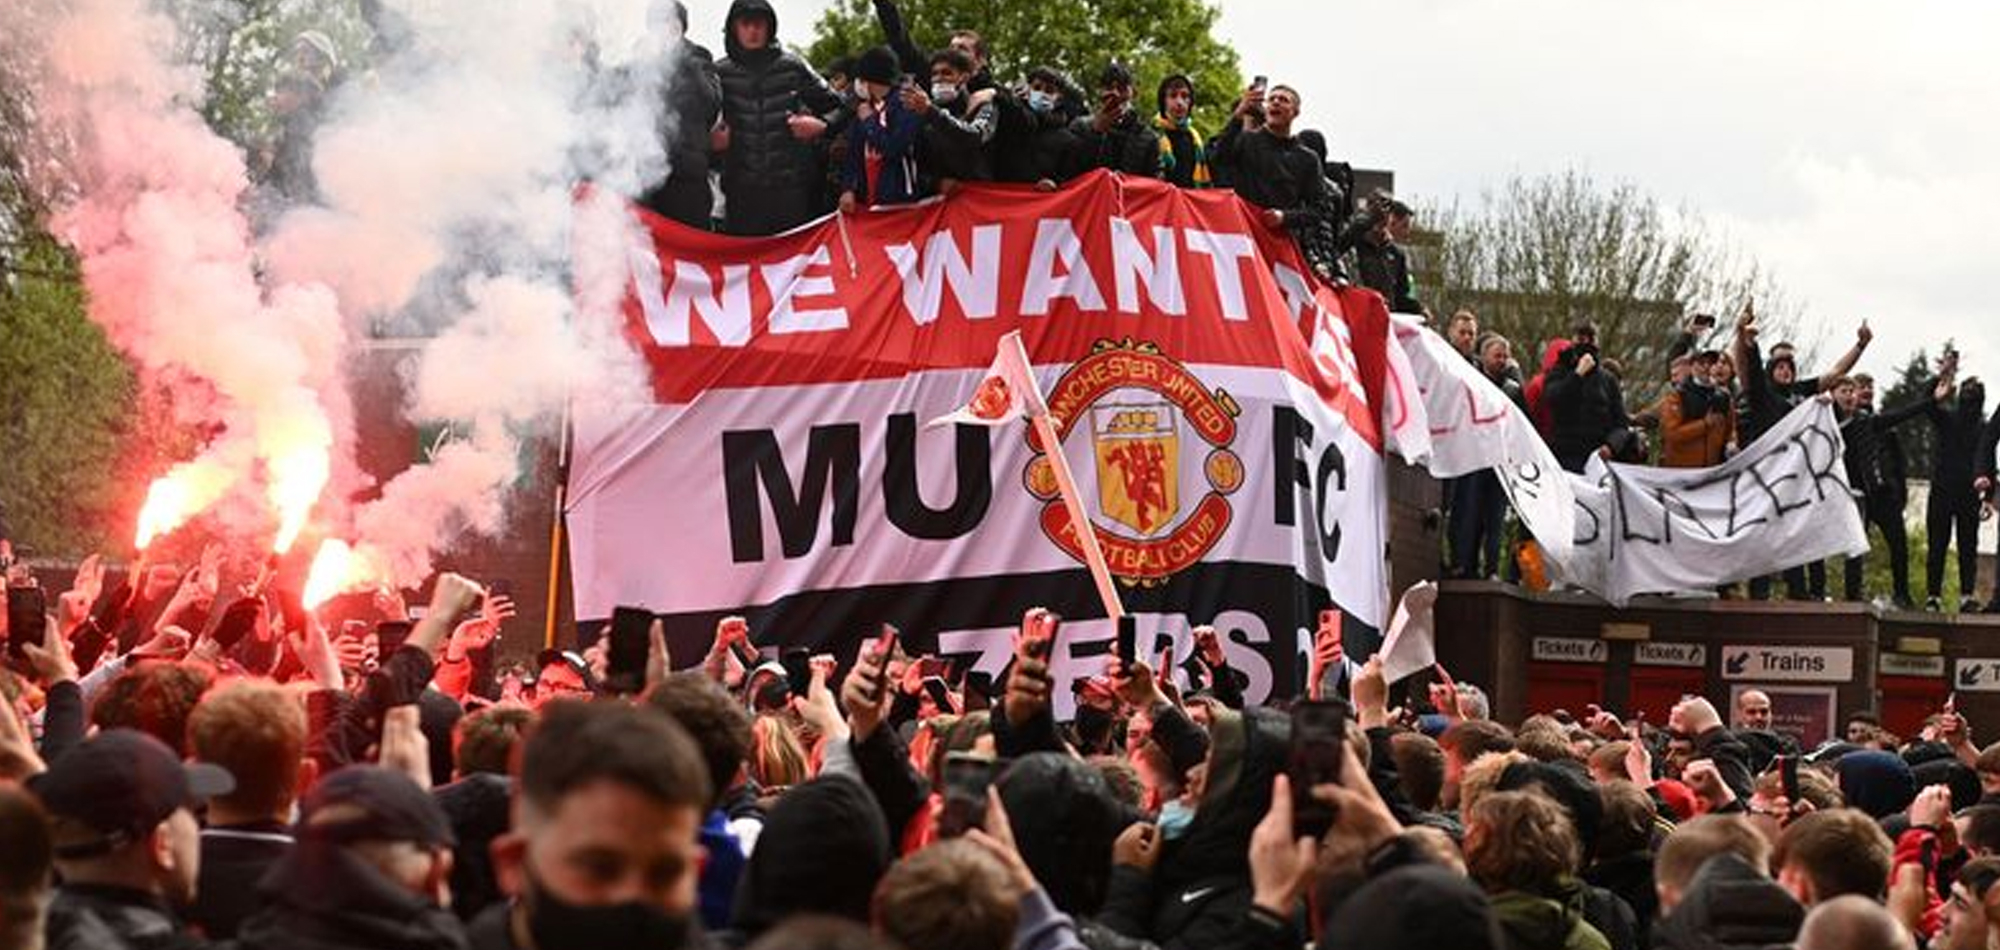 Manchester United v Liverpool game postponed after fan protest